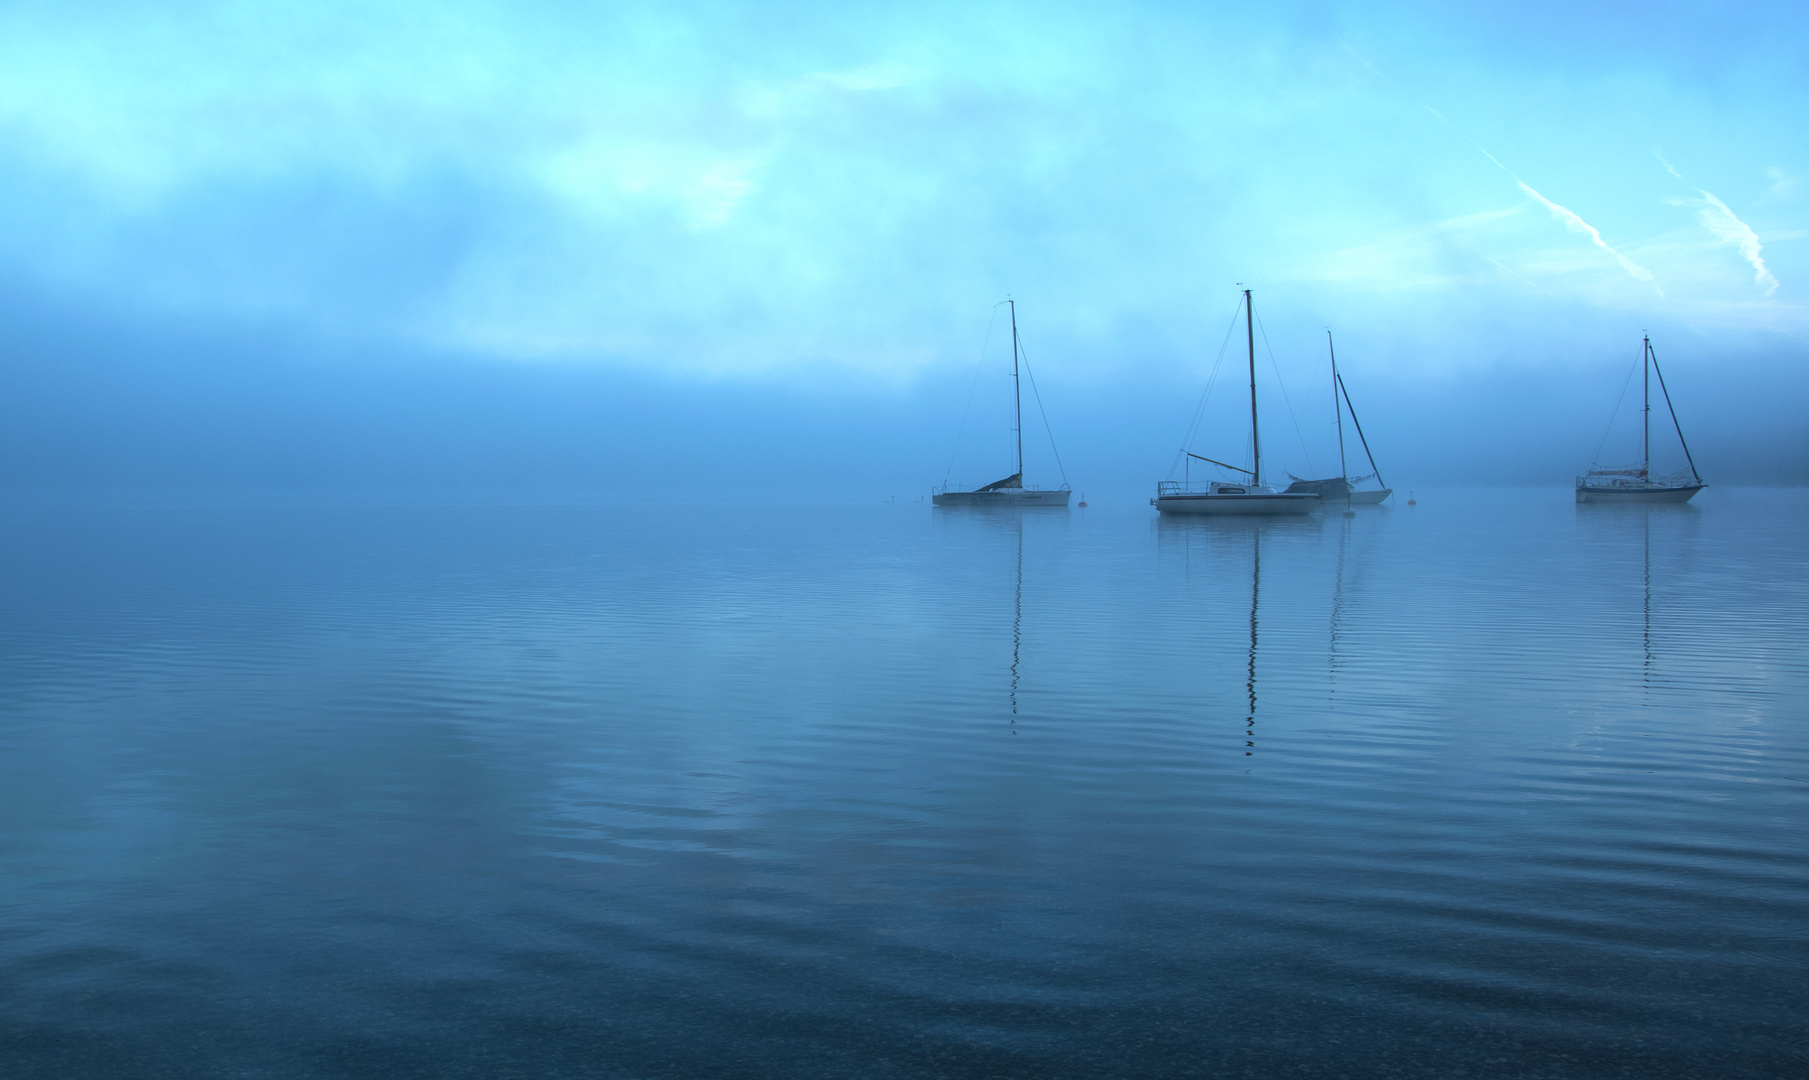 Boote im Nebel